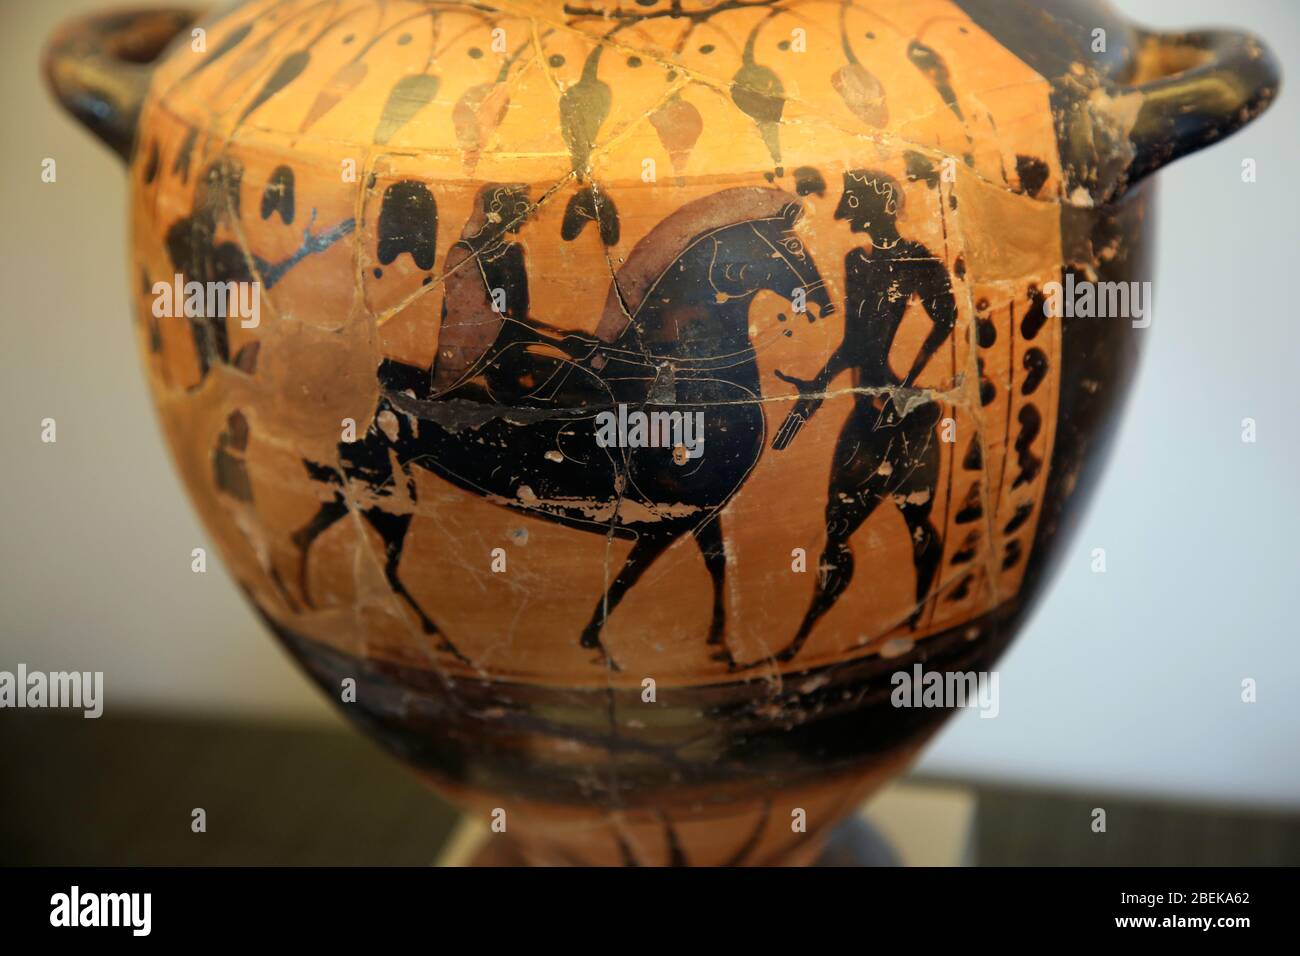 Wasserbehälter (Hydria) mit einem Reiter (560-550 v. Chr.). Dachgeschoss schwarze Figur, in Athen gemacht, in Arcioni, Paestum gefunden. Archäologisches Museum Paestum. Stockfoto